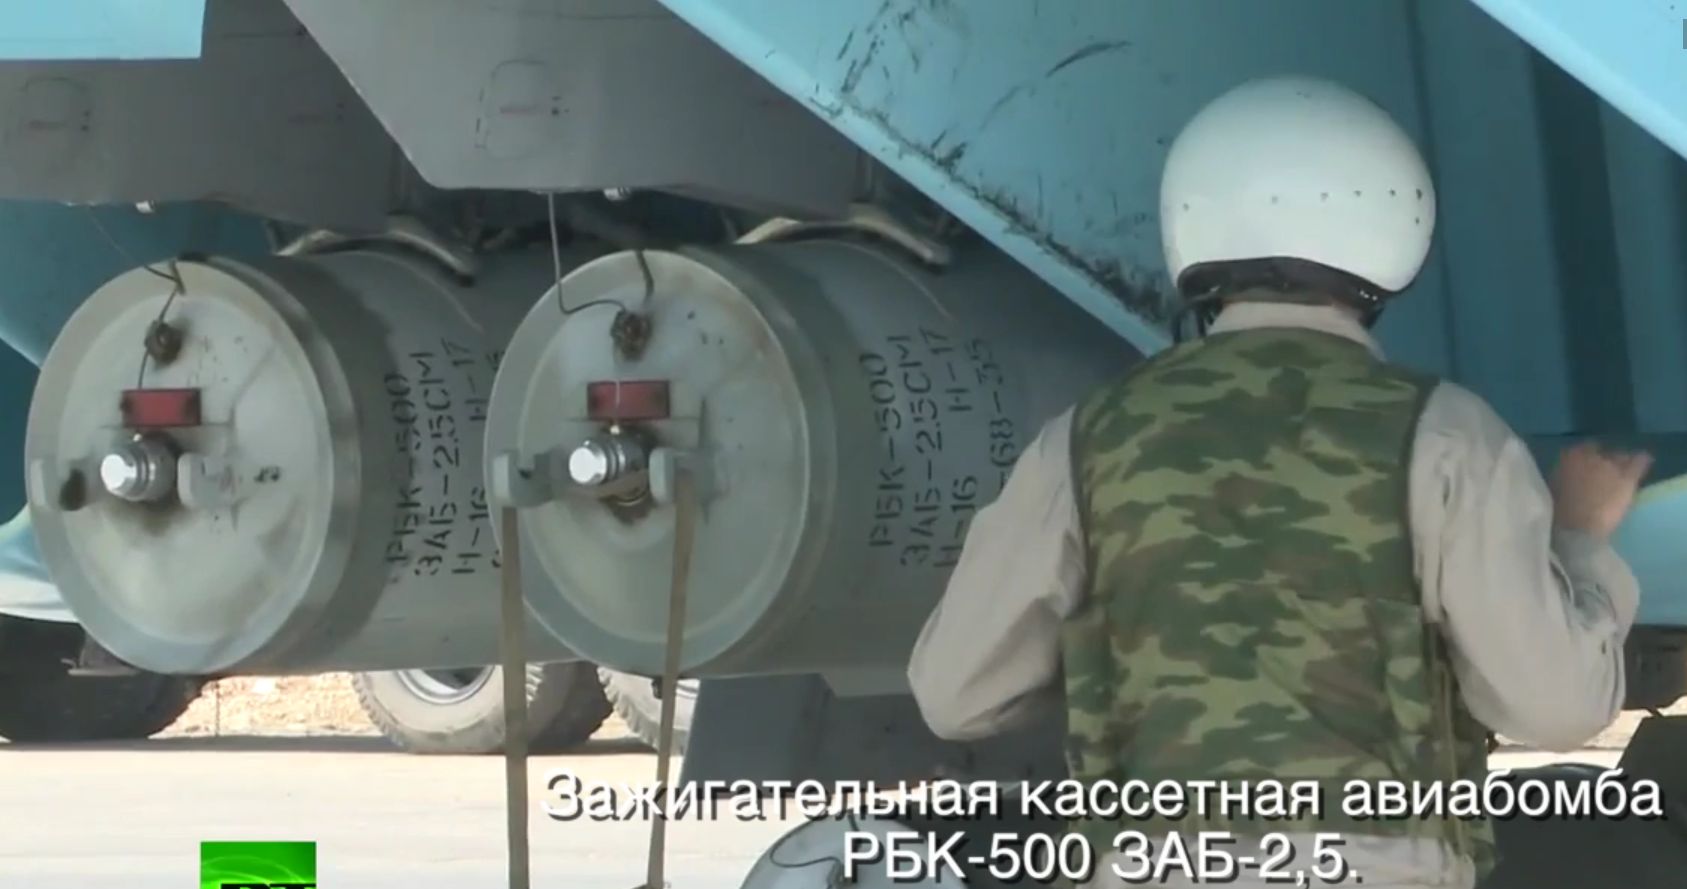 Kazettás bombákat kér Ukrajna az Egyesült Államoktól